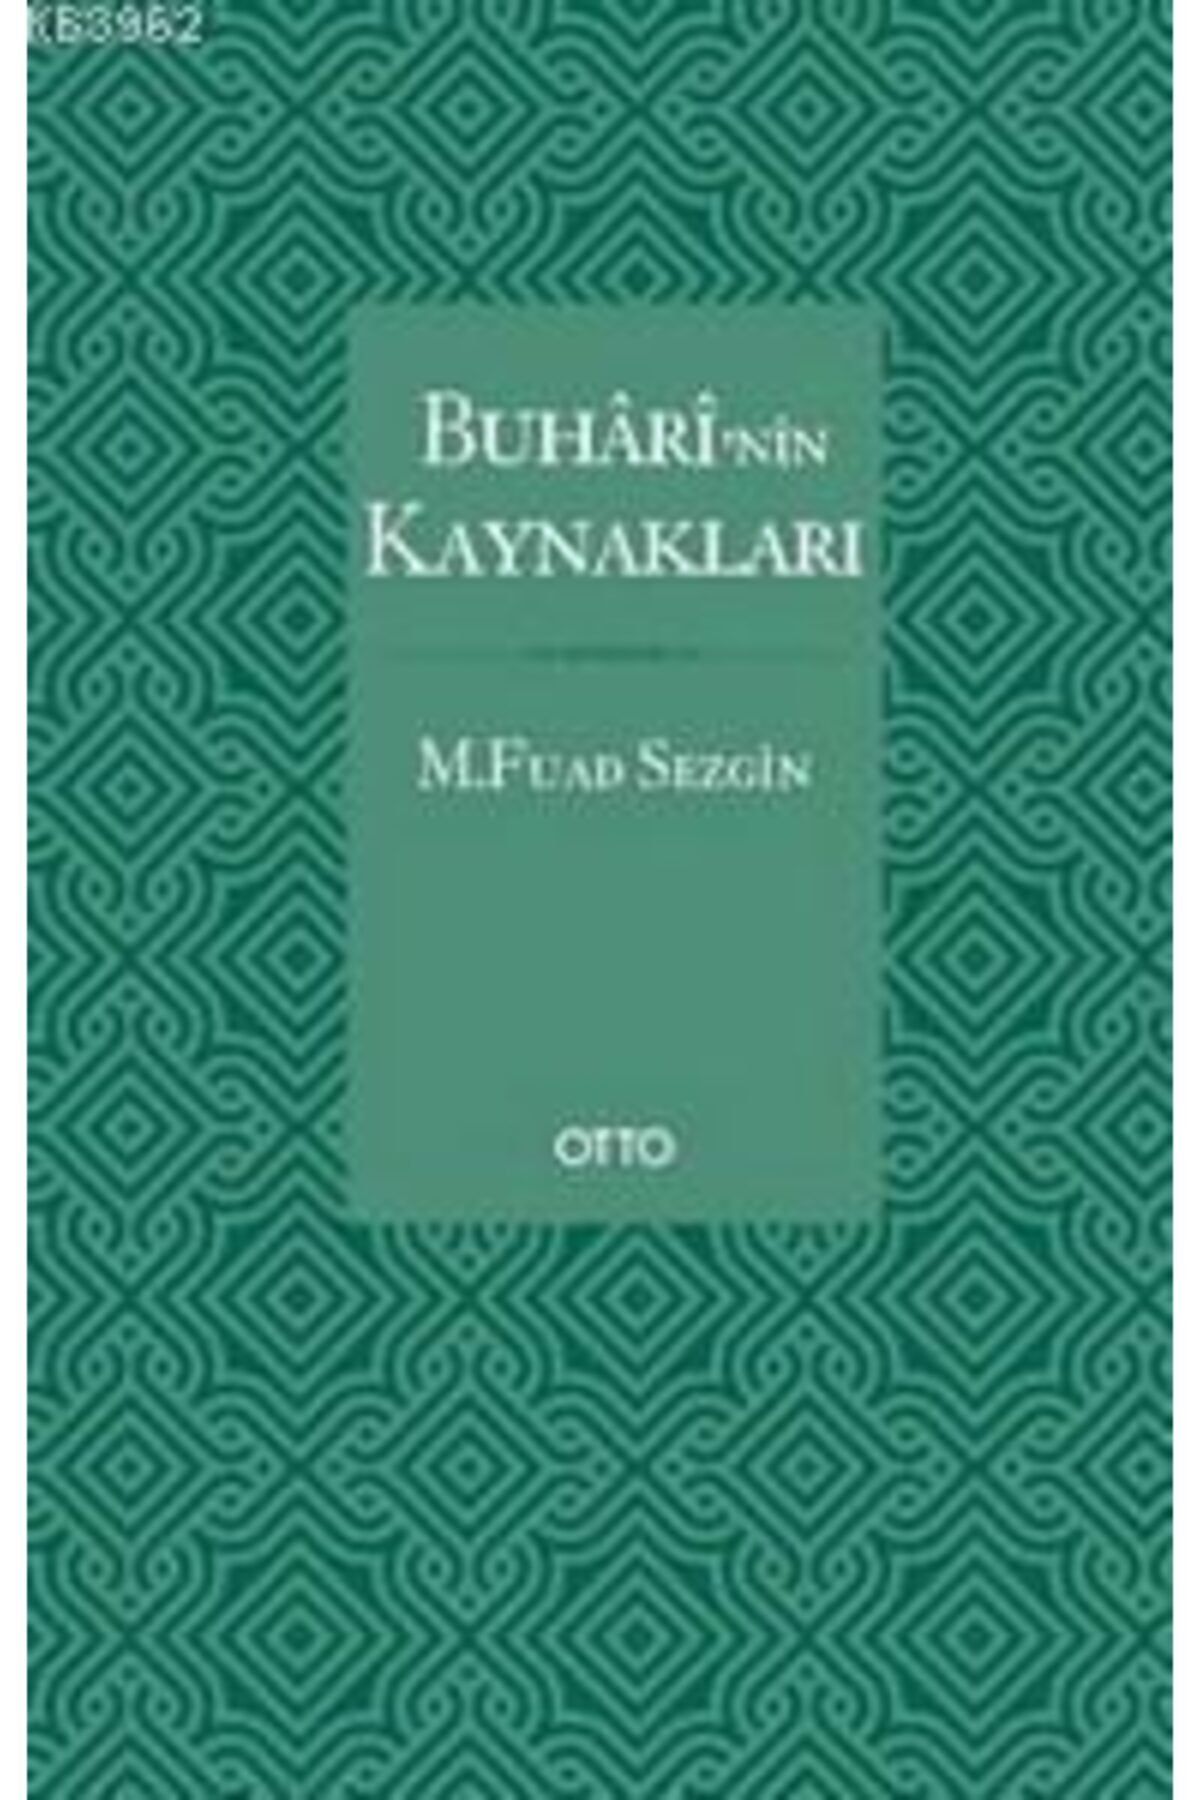 Otto Yayınları Buhari’nin Kaynakları kitabı - M. Fuad Sezgin - Otto Yayınları